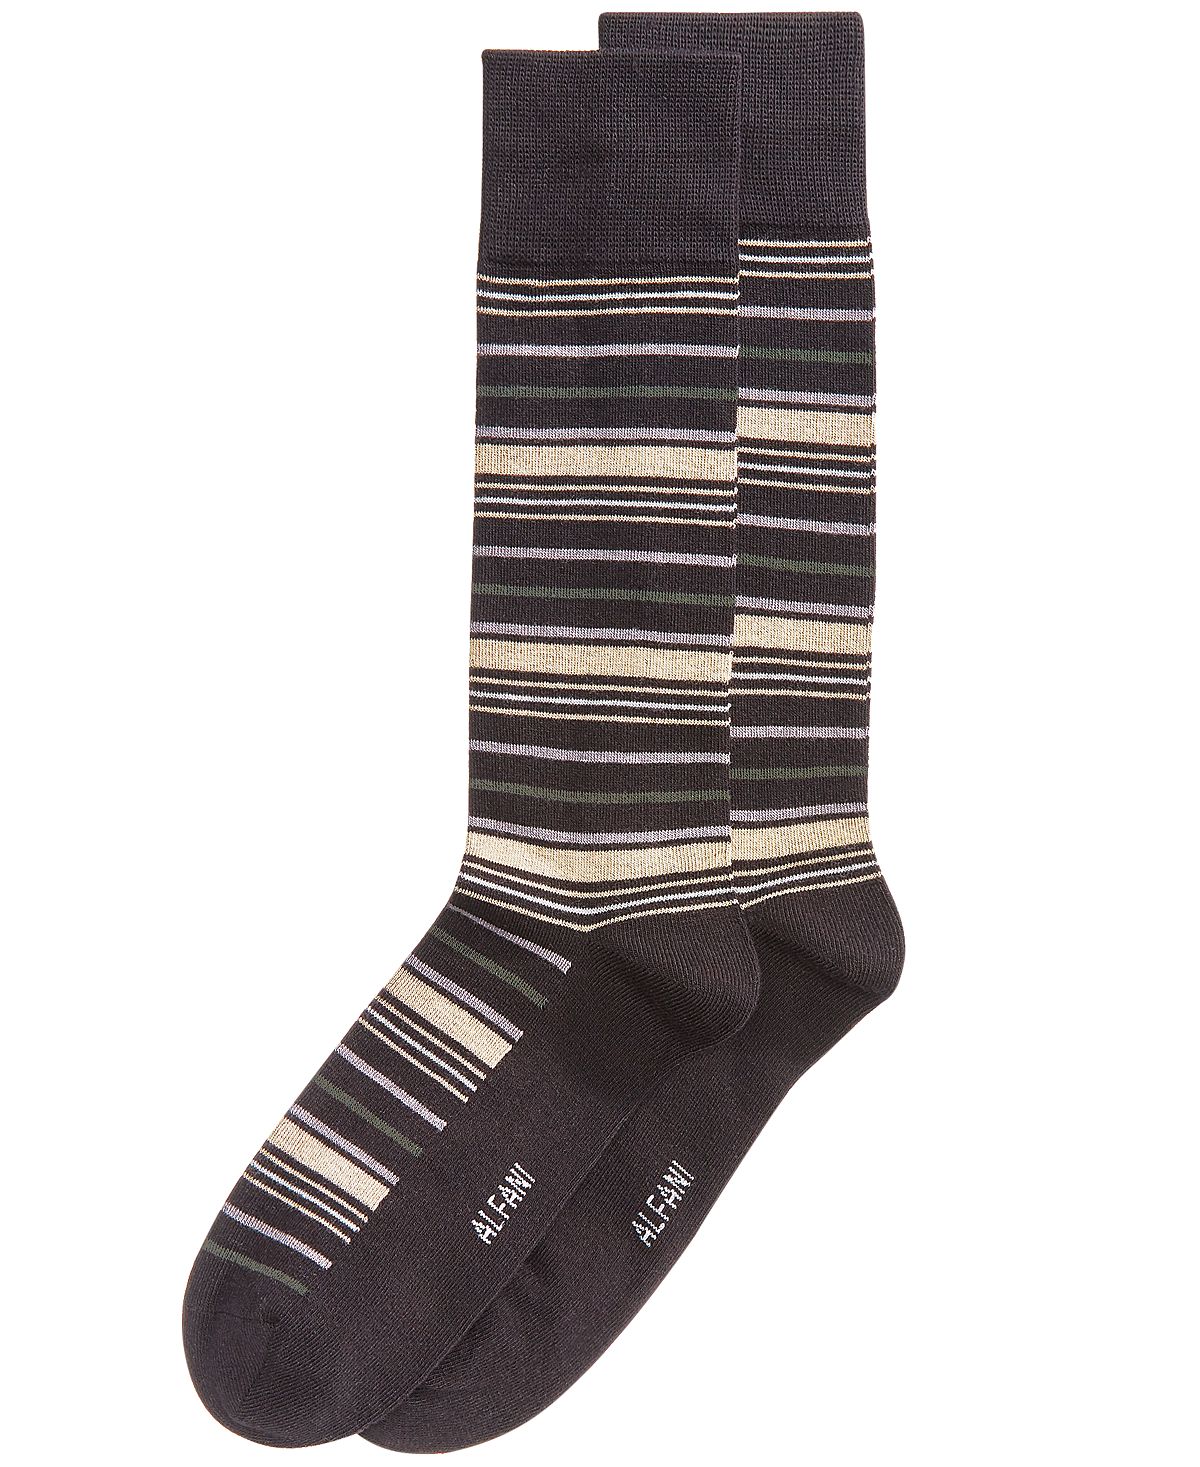 Alfani Variegated Stripe Dress Socks Tan Black